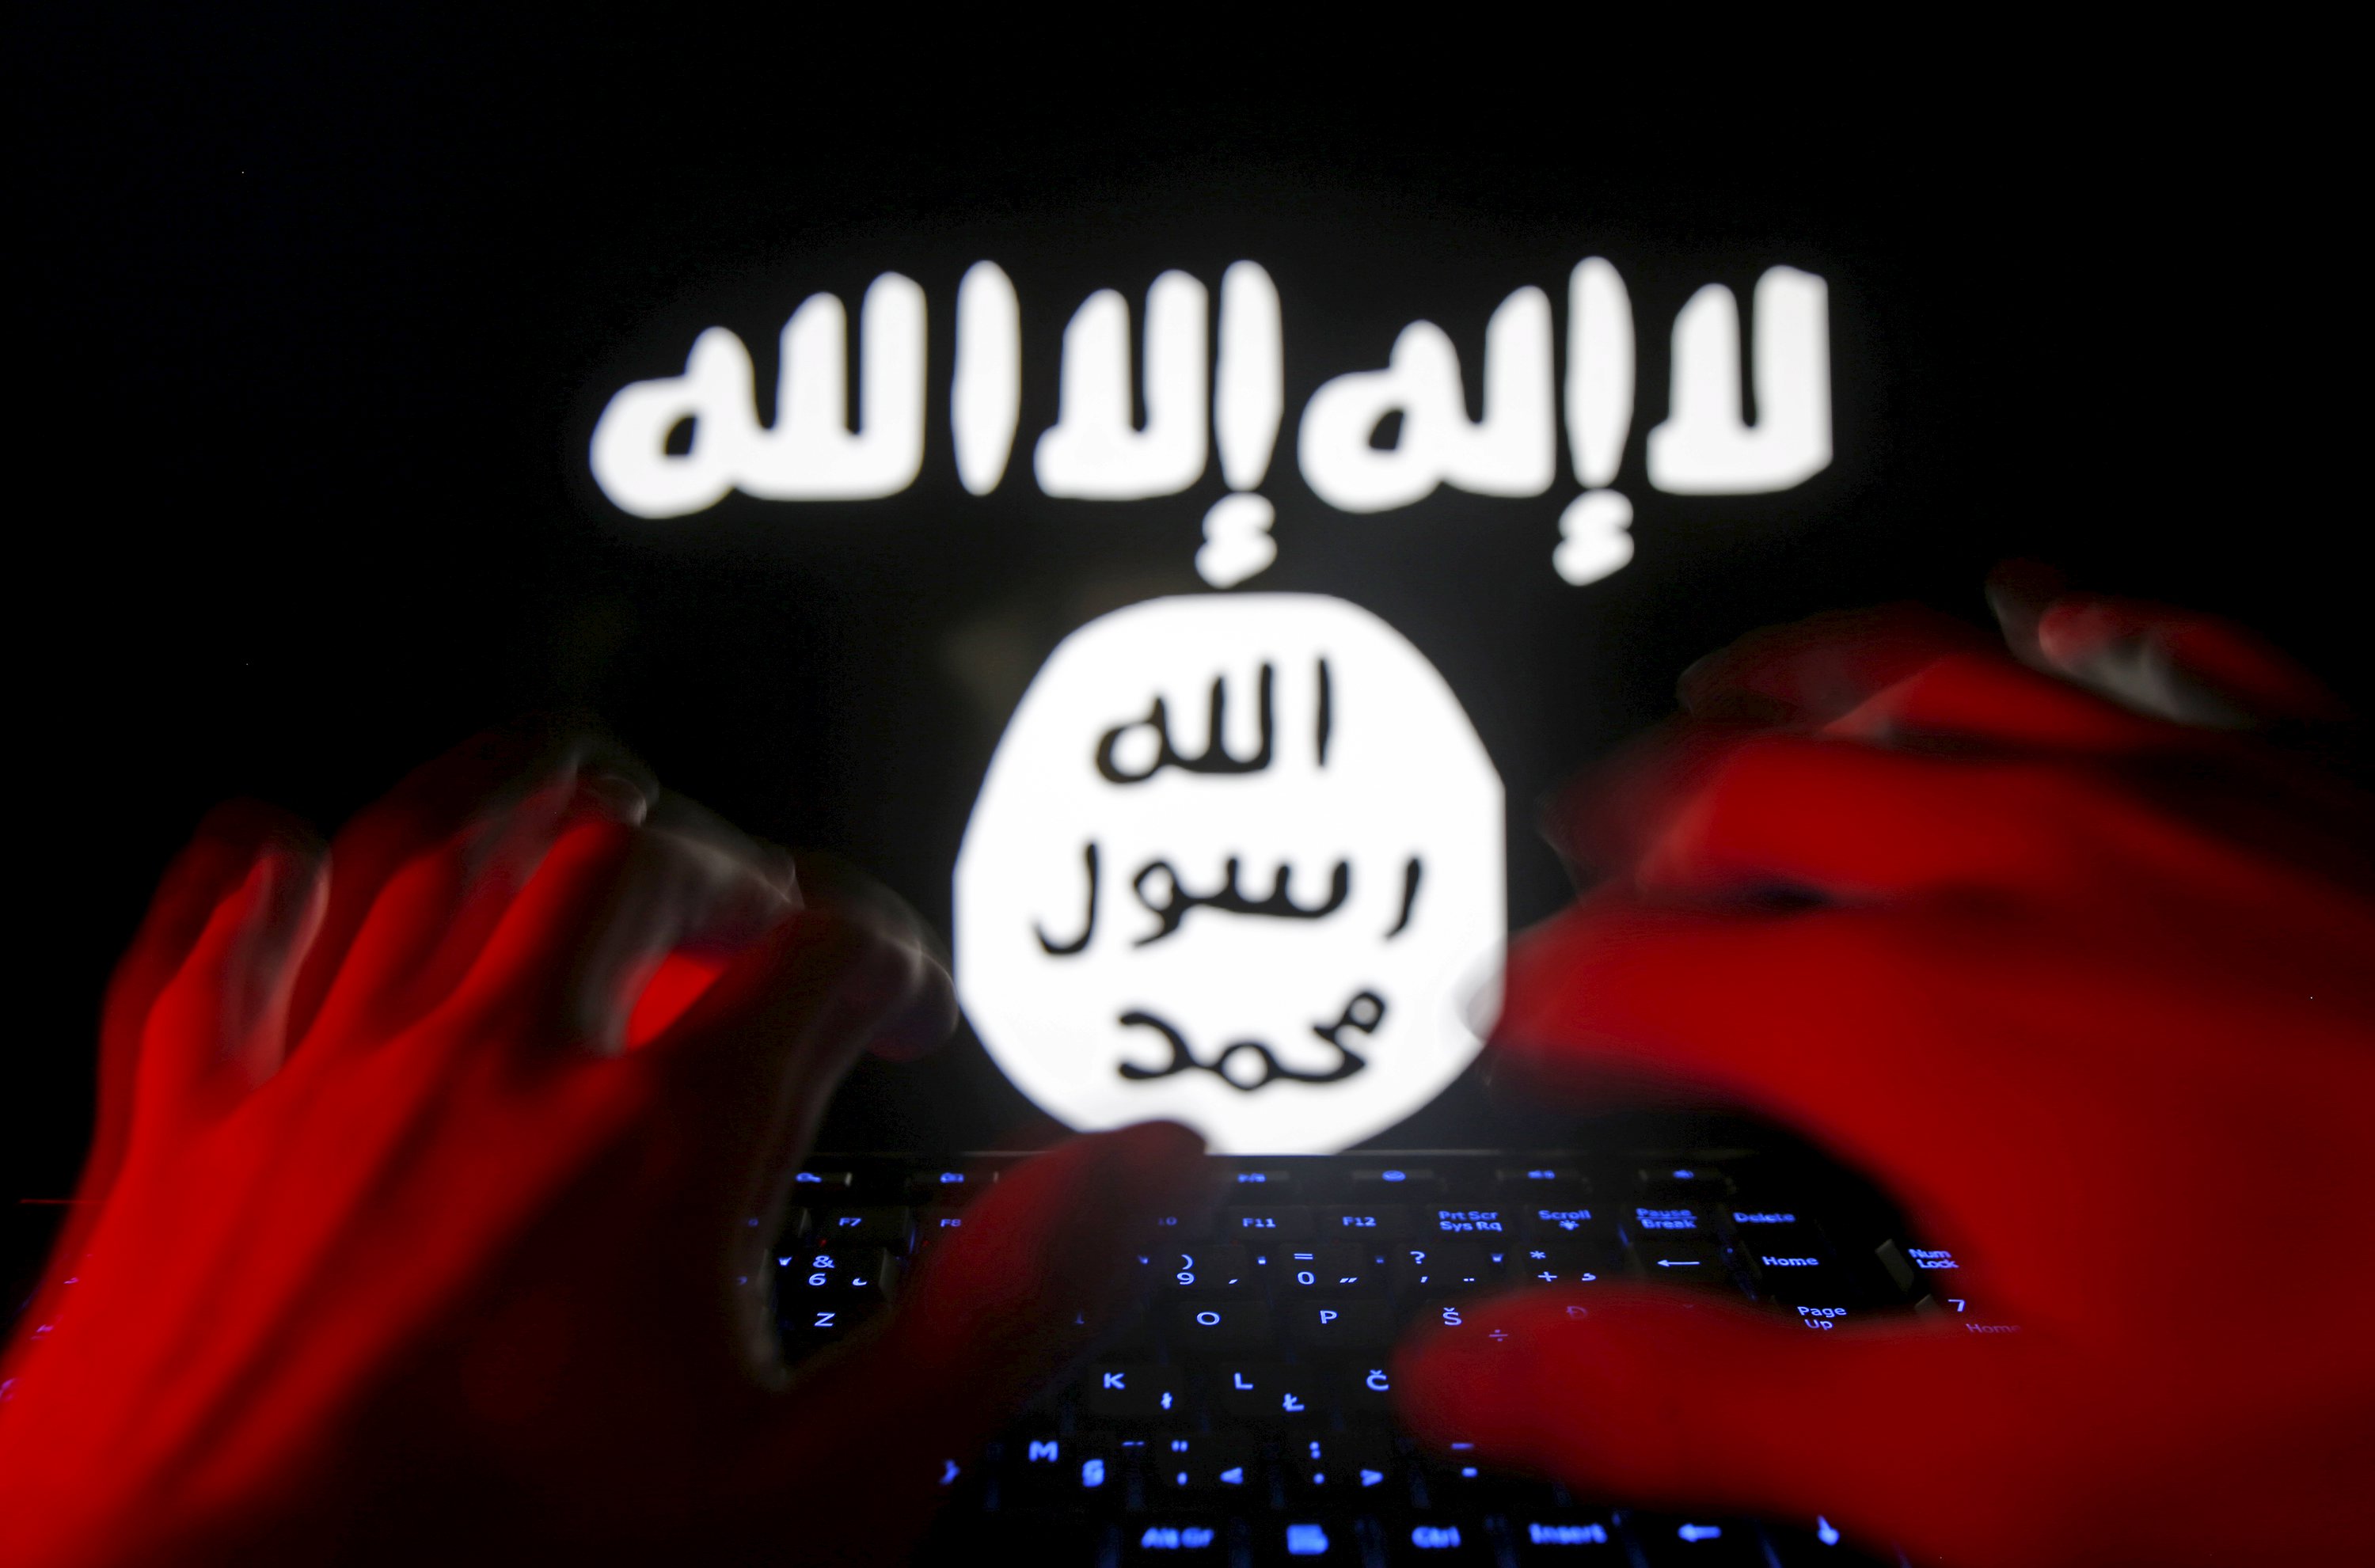 الفضاء الافتراضي ملاذ داعش لاعادة تشكيل دولة الخلافة السيبرانية بعد انهيار مشروعه على أرض الواقع